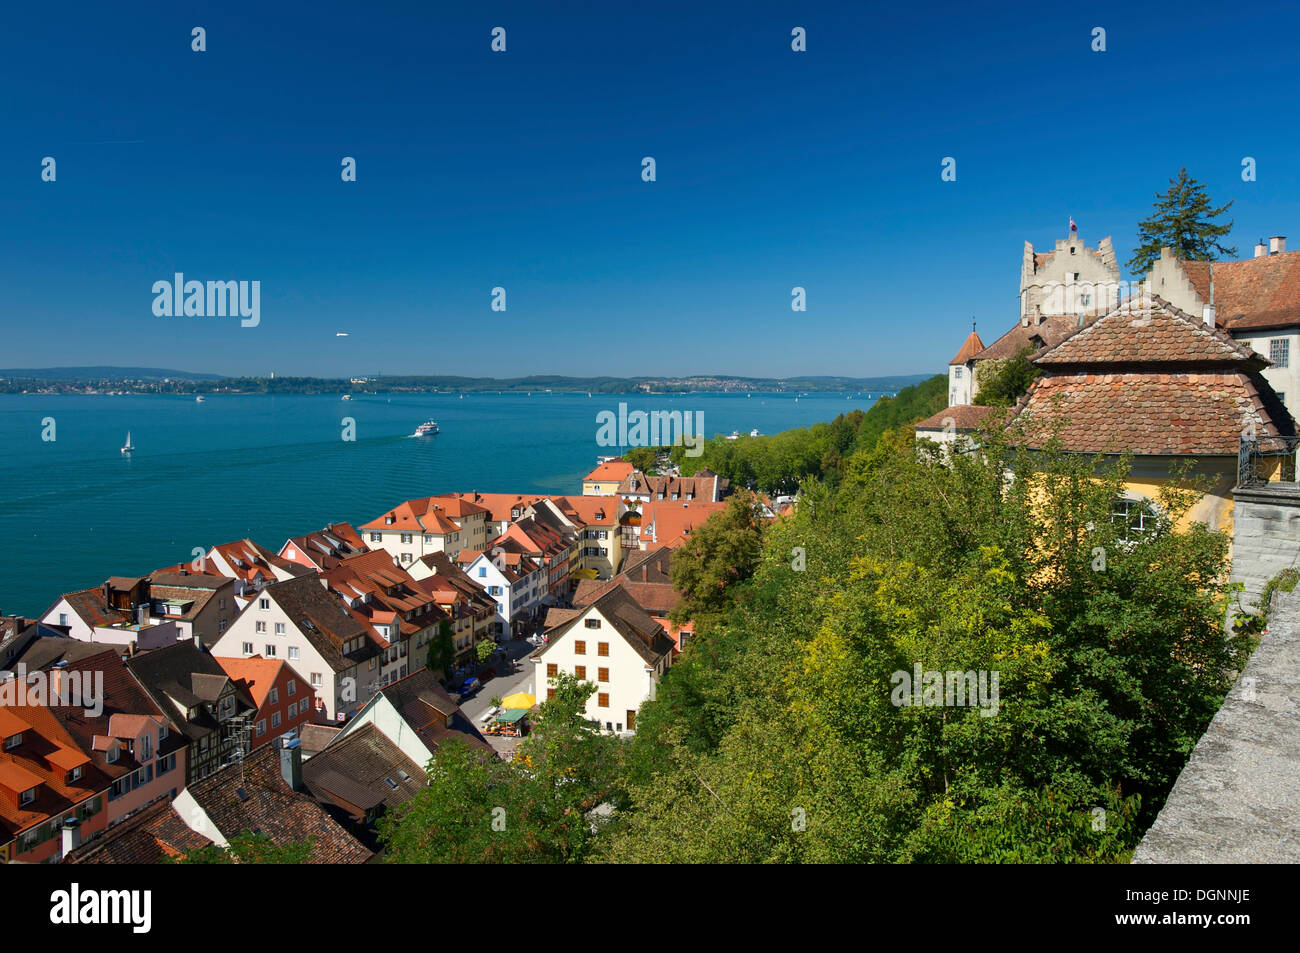 Altes Schloss or Burg Meersburg castle in Meersburg, Lake Constance, Baden-Wuerttemberg Stock Photo